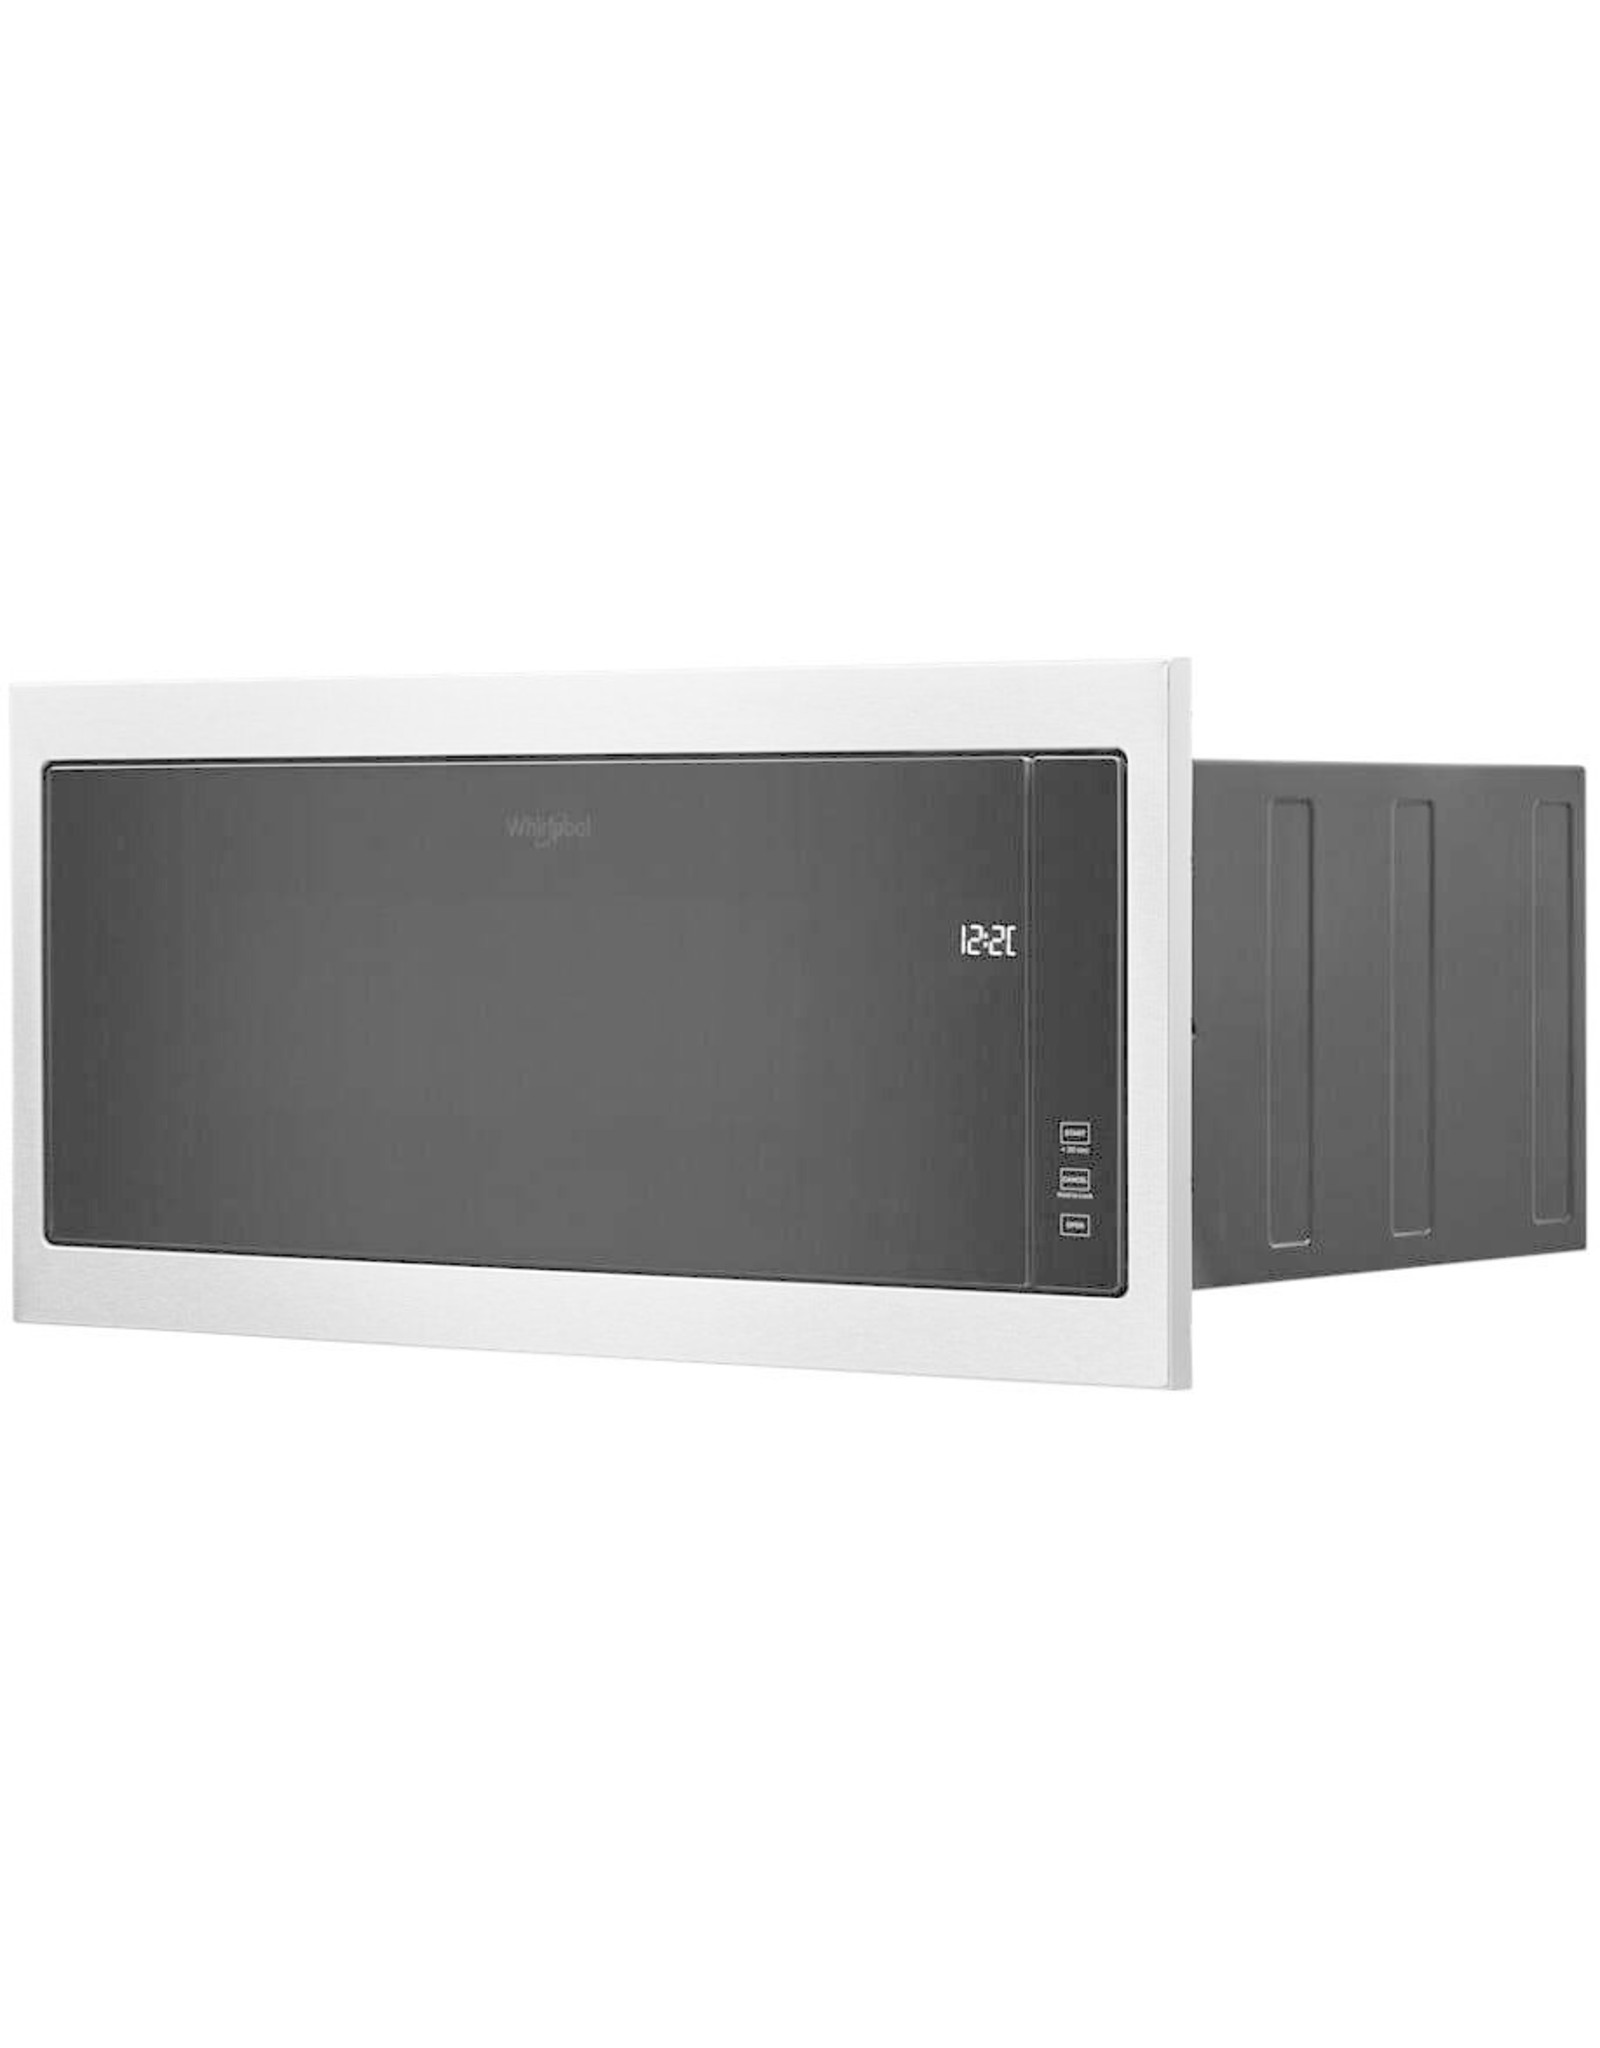 WMT50011KS 1.1 cu. ft. Built-In Microwave in Stainless Steel